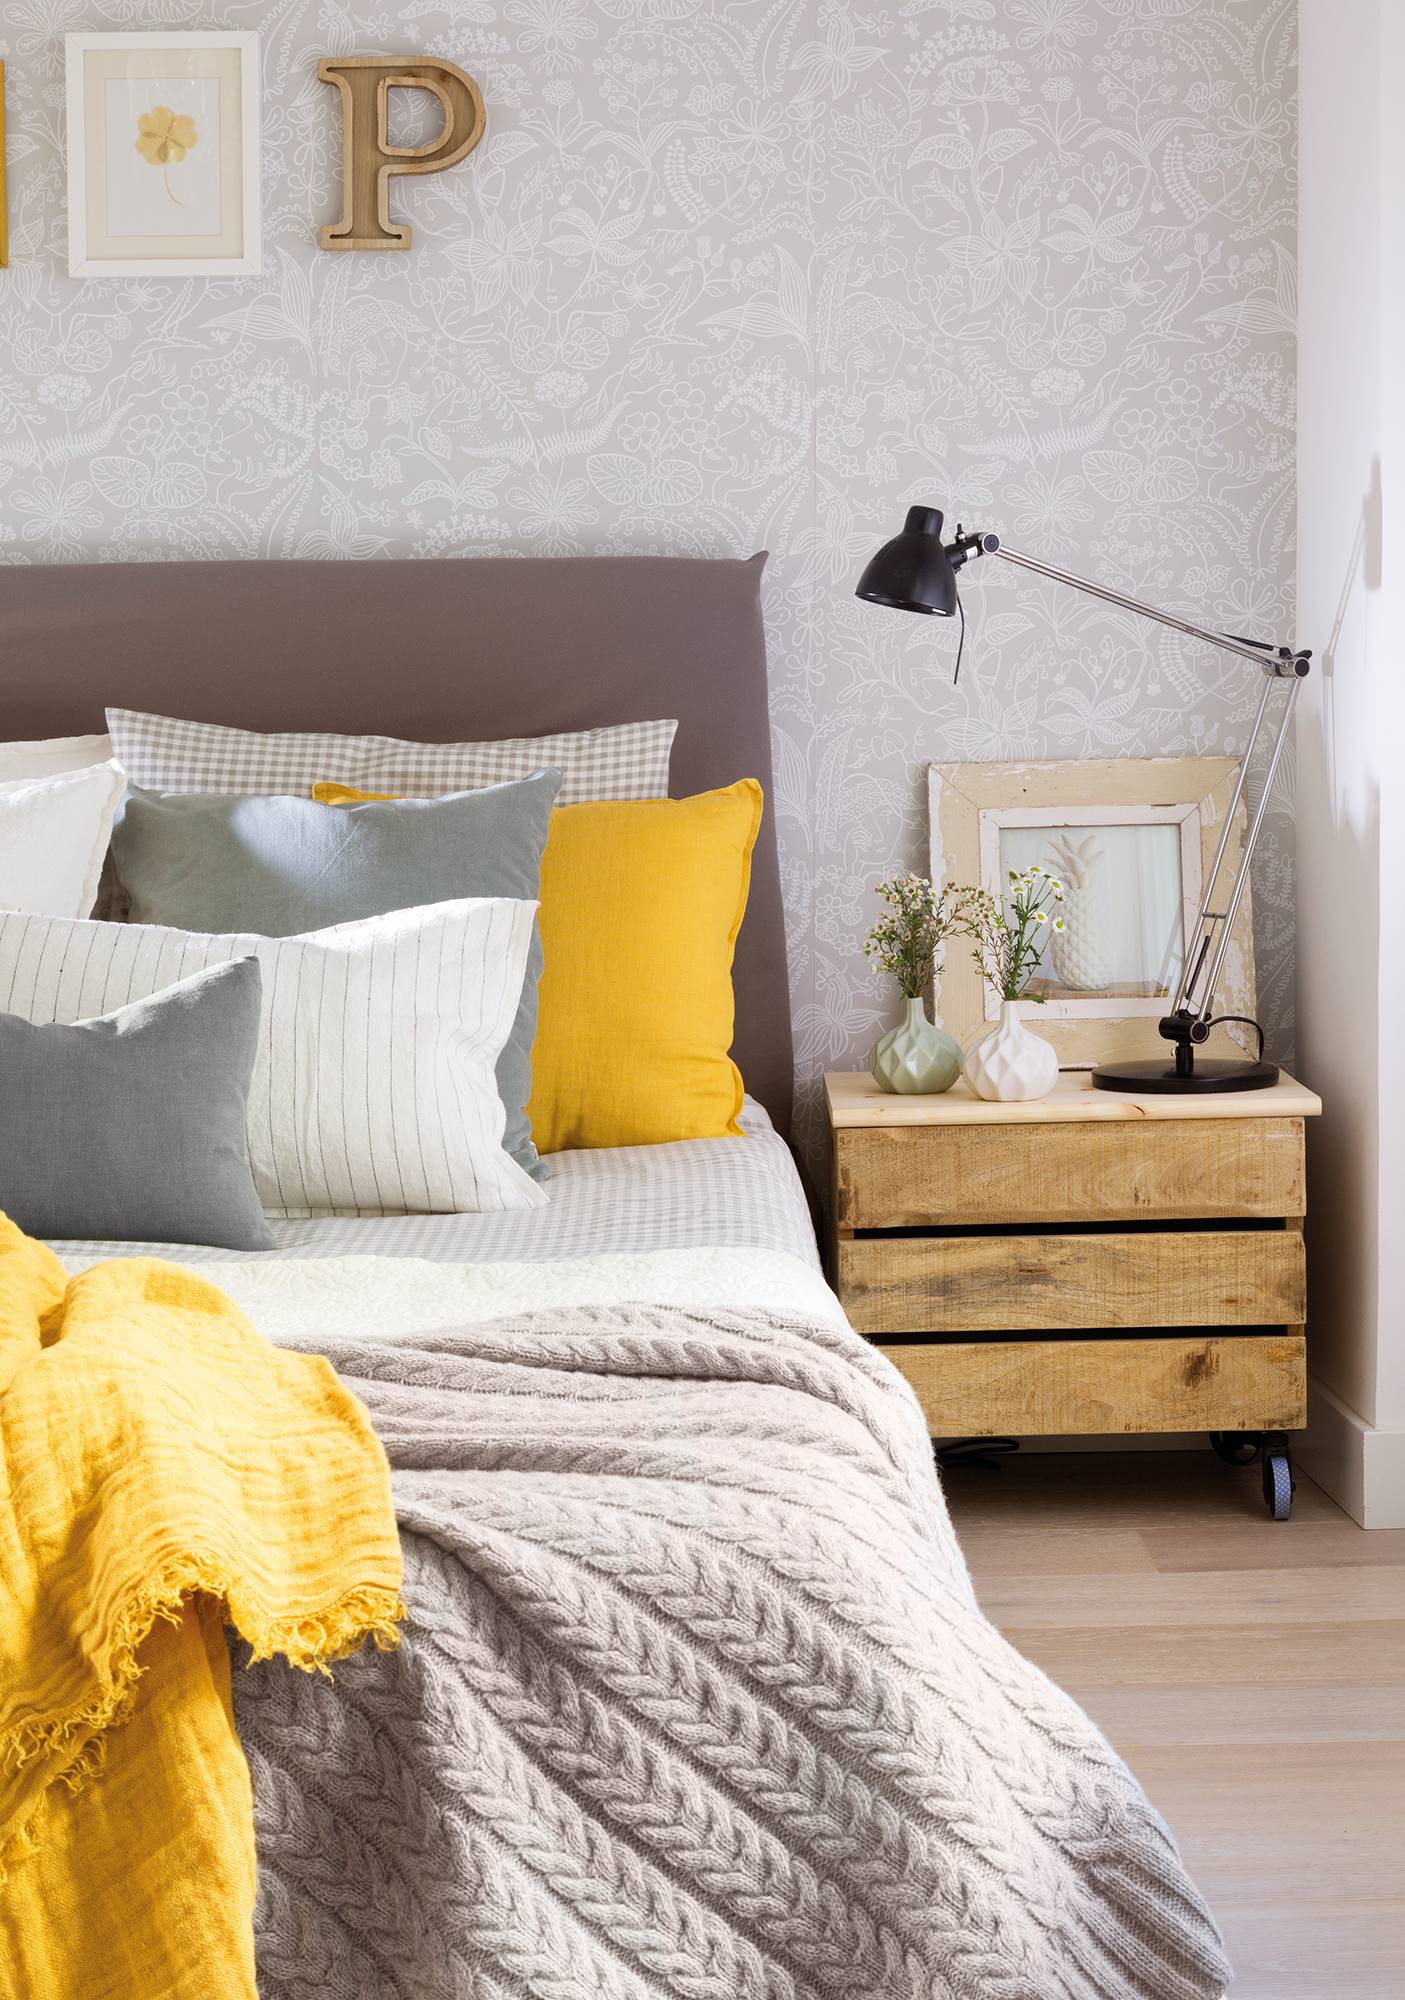 Semitoma de dormitorio con papel pintado y cama con cojines y mesilla de noche hecha con caja de madera.